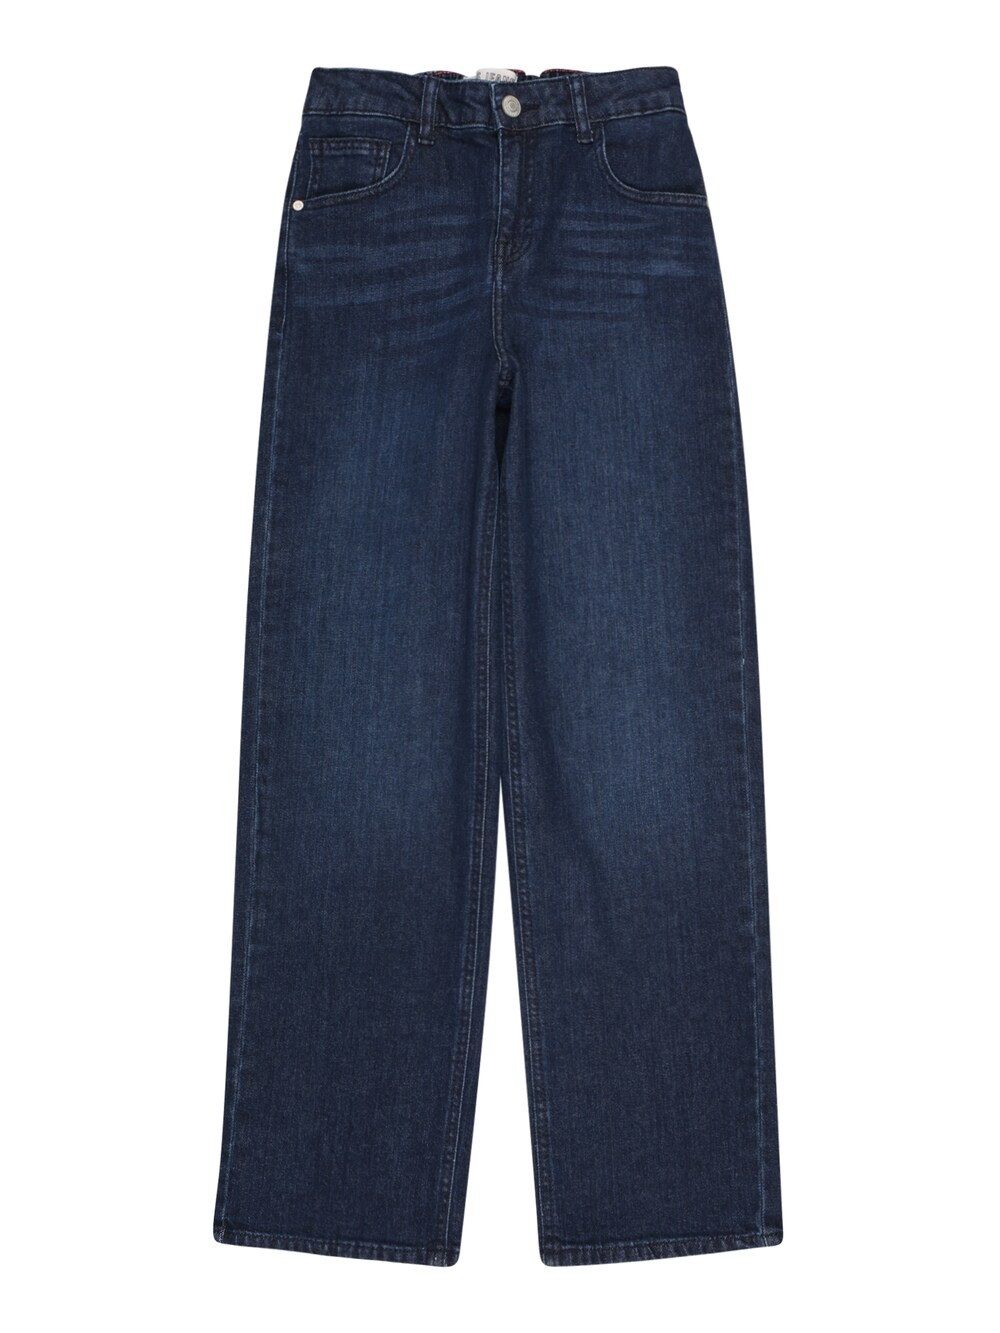 Обычные джинсы Cars Jeans BRY, темно-синий цена и фото